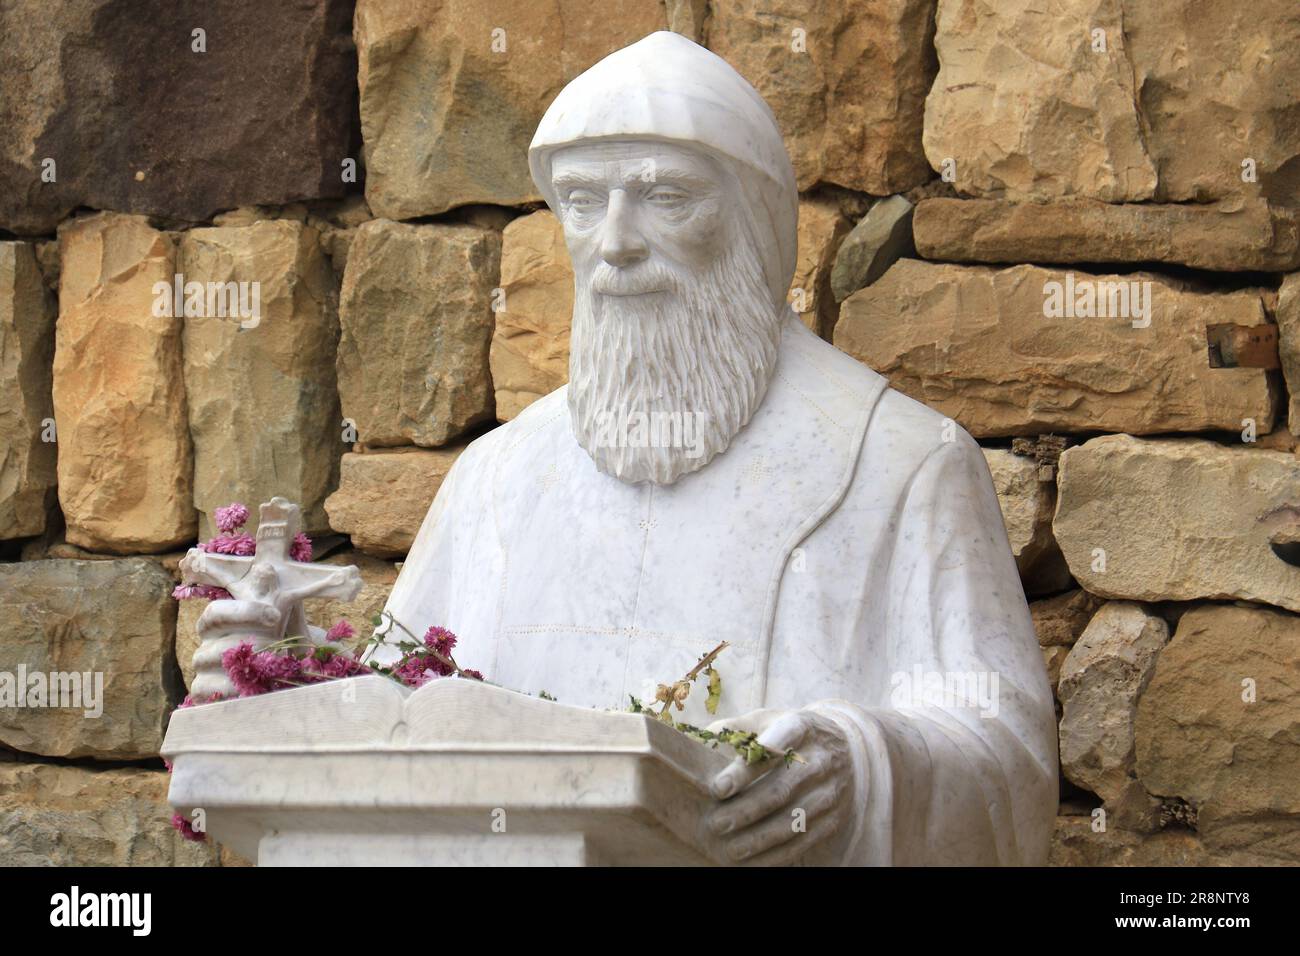 Una statua di Mar Charbel, il santo libanese, in possesso di un crocifisso. Foto Stock